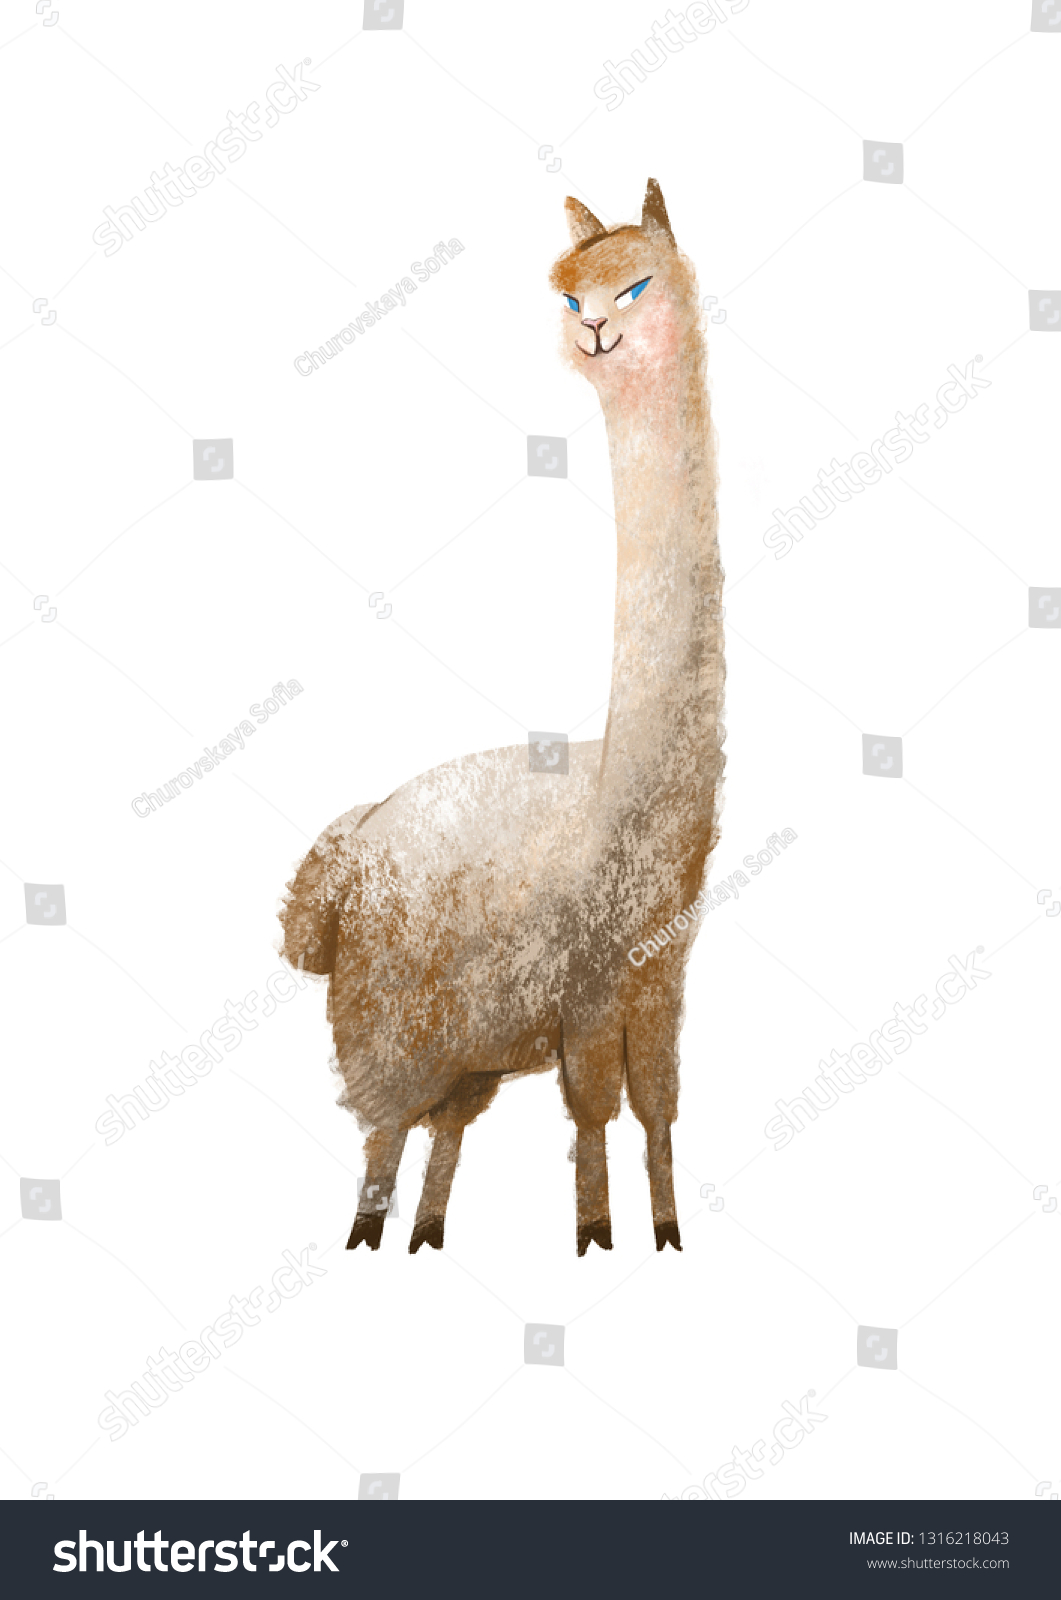 アルパカ長い首を持つラマの動物 白い背景に図面 のイラスト素材